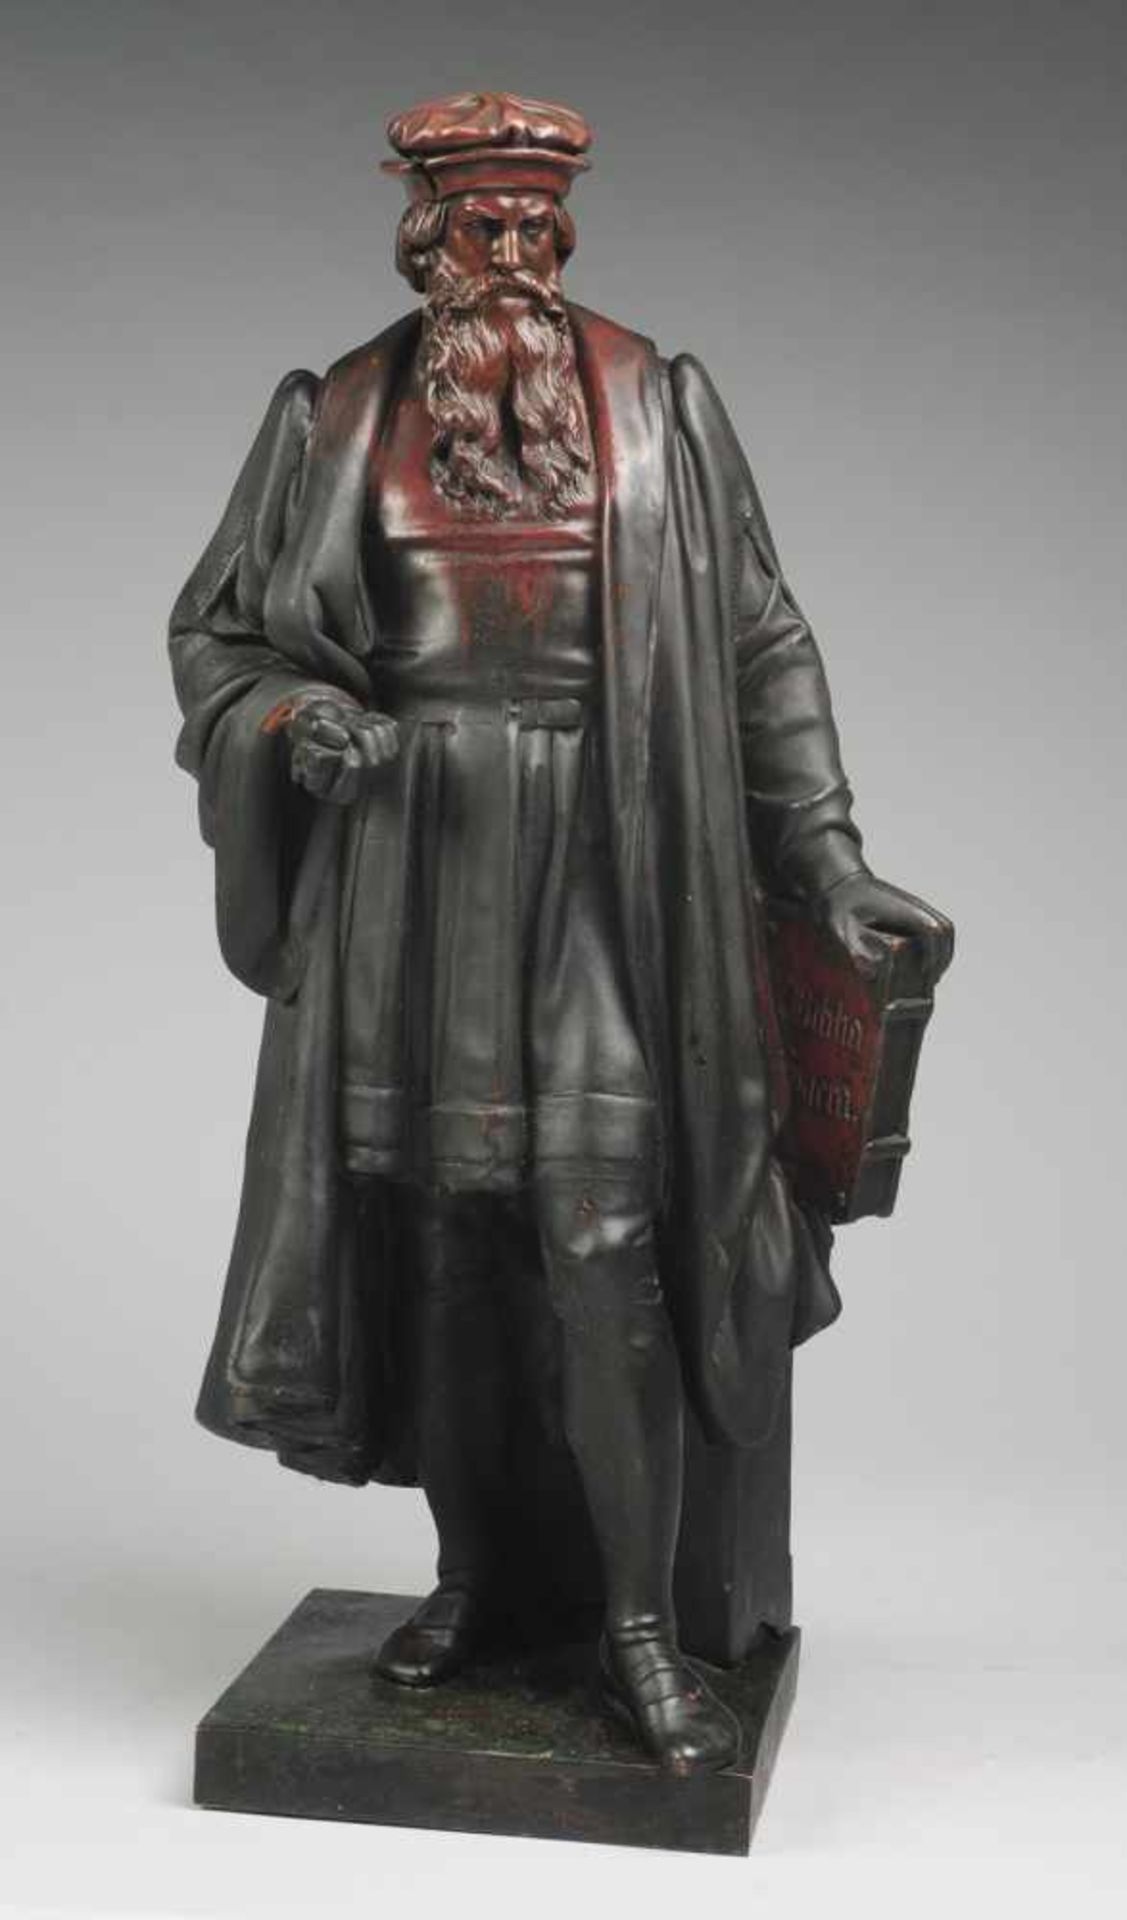 Statue des Johannes Gutenberg